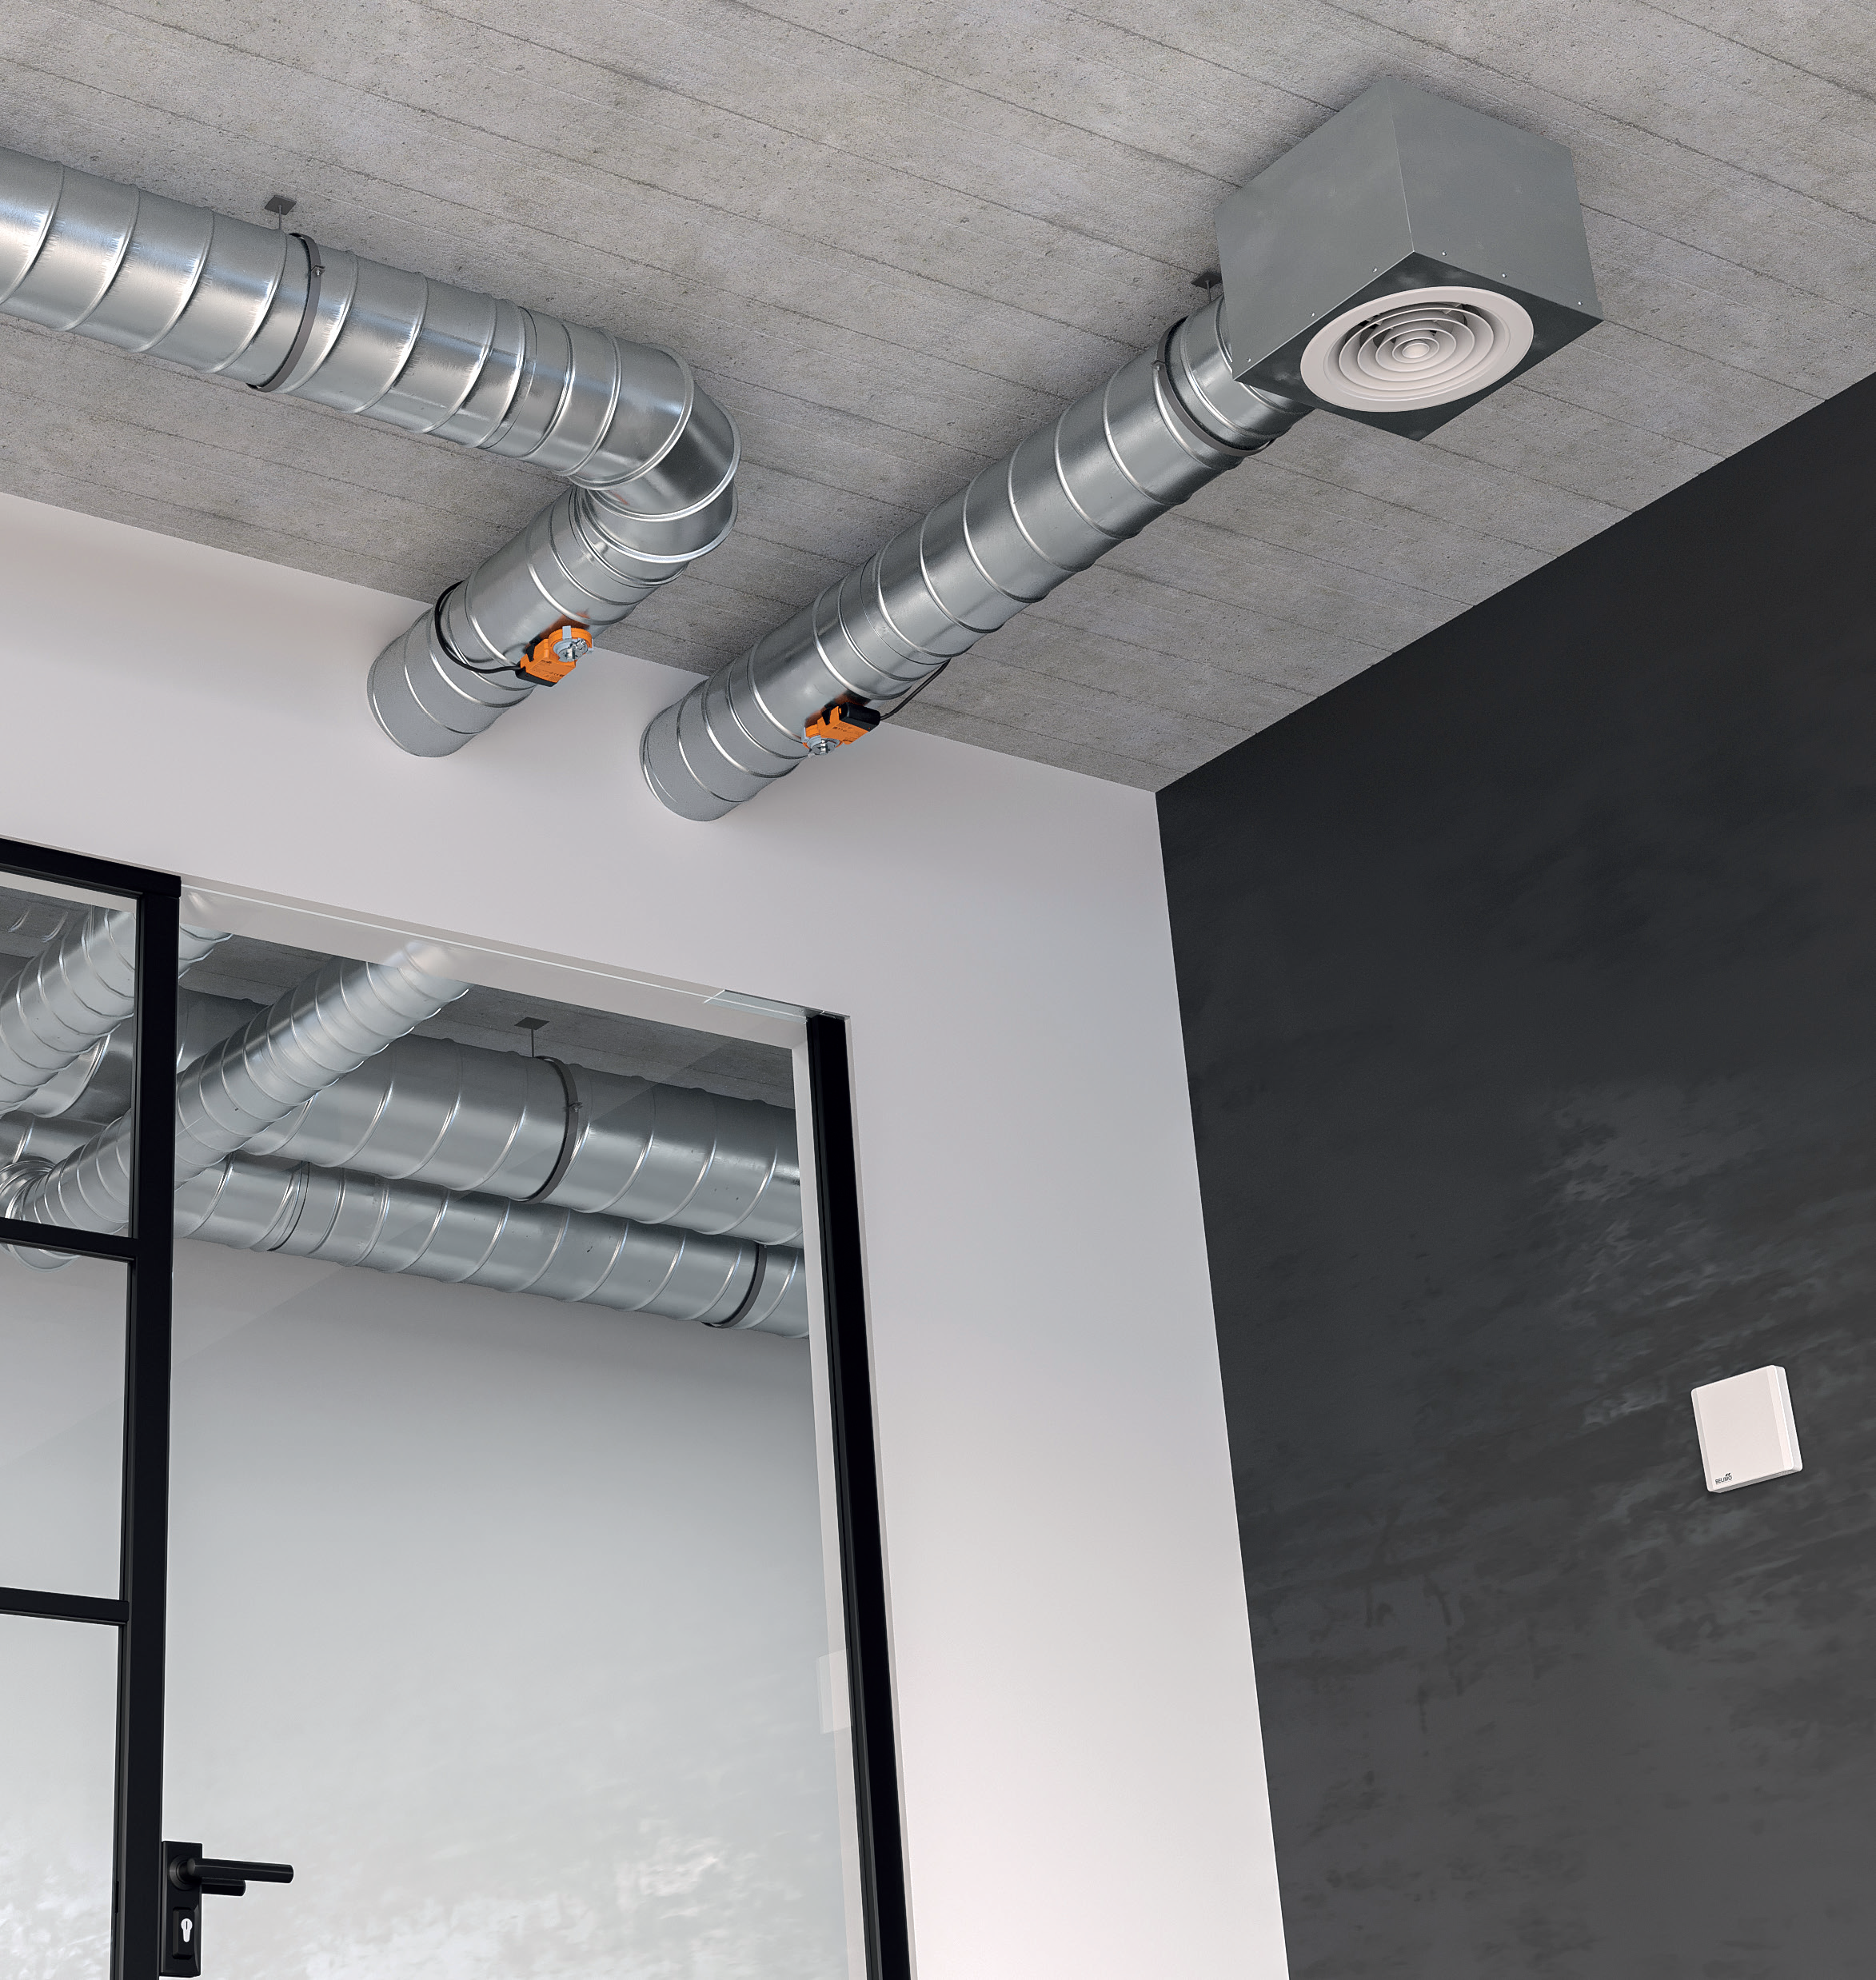 Jednoduché a účinné řešení pro zdravé ovzduší v interiéru